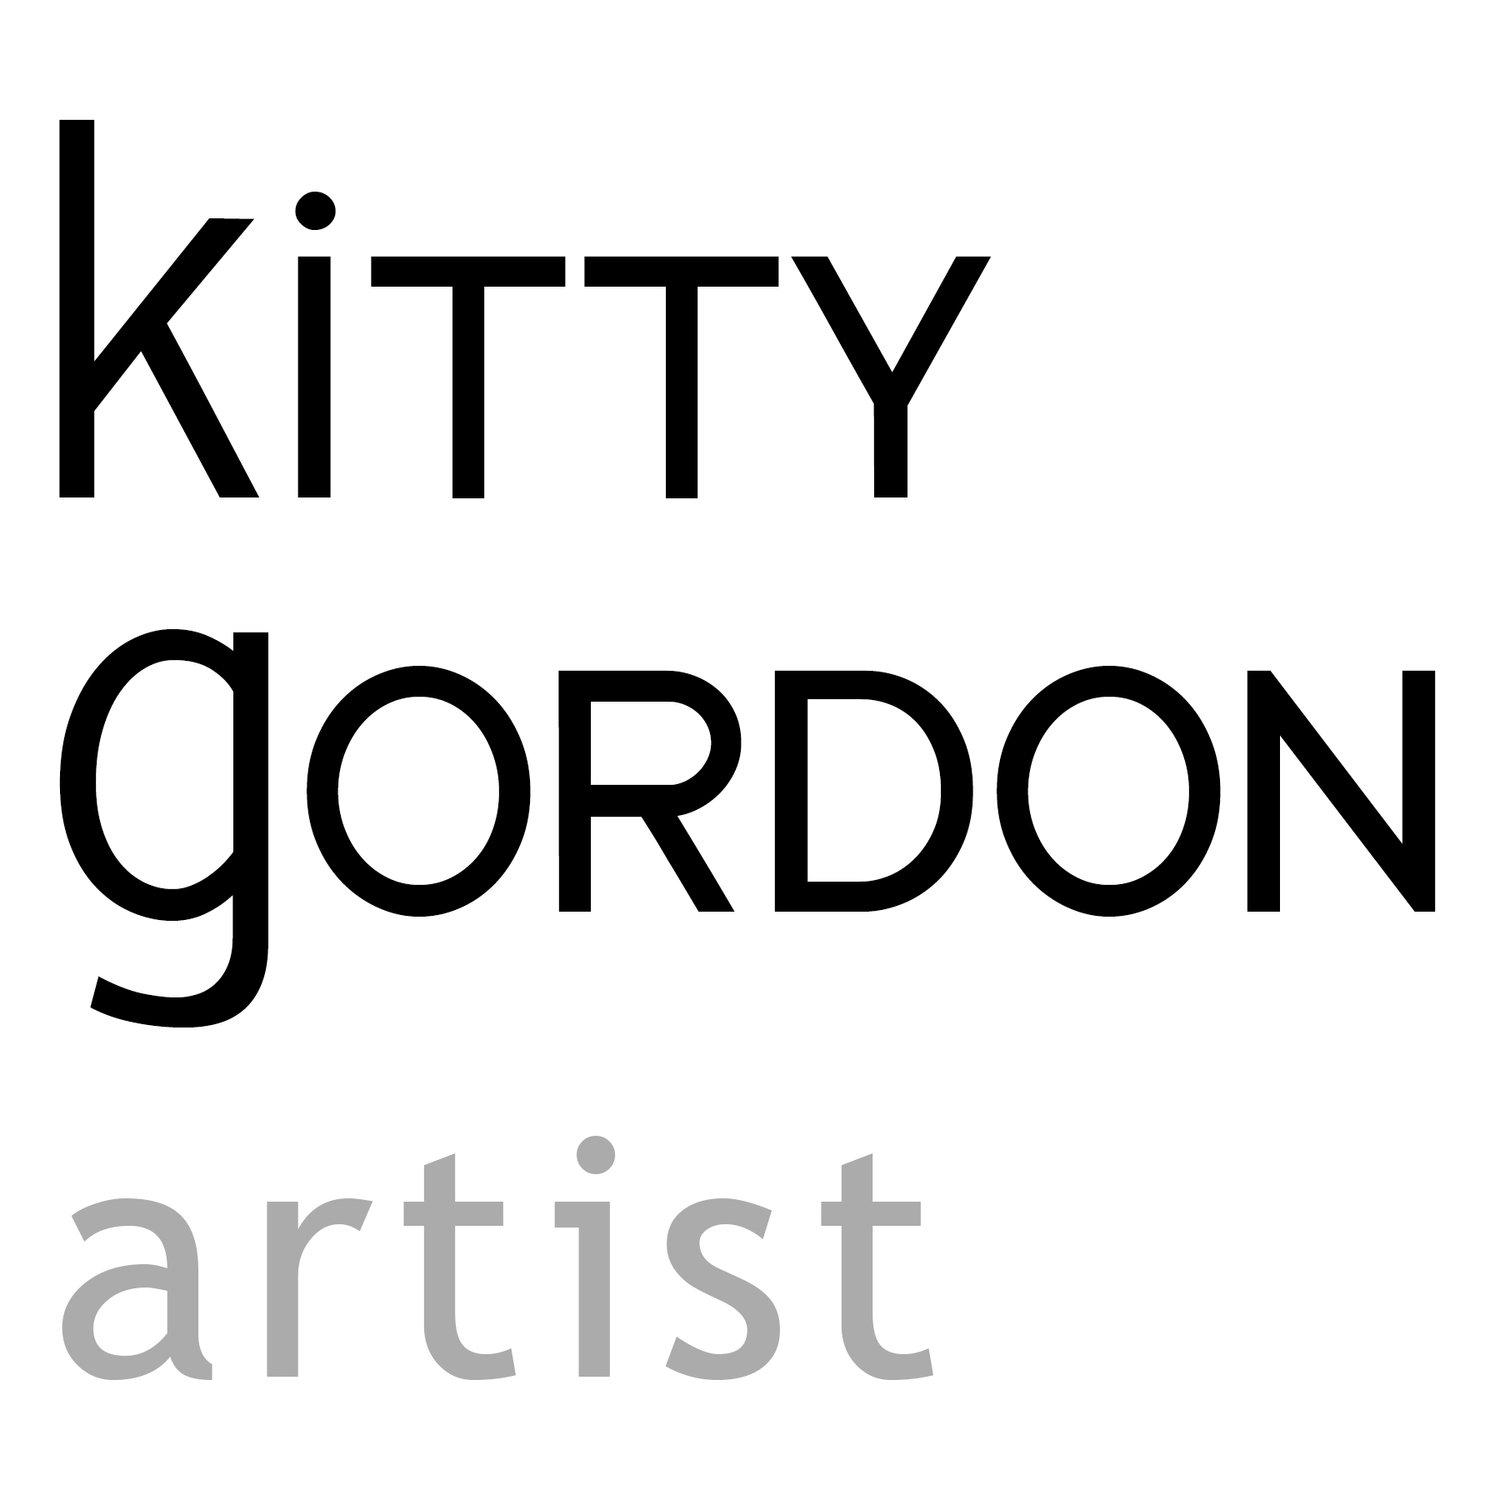 Kitty Gordon - Artist